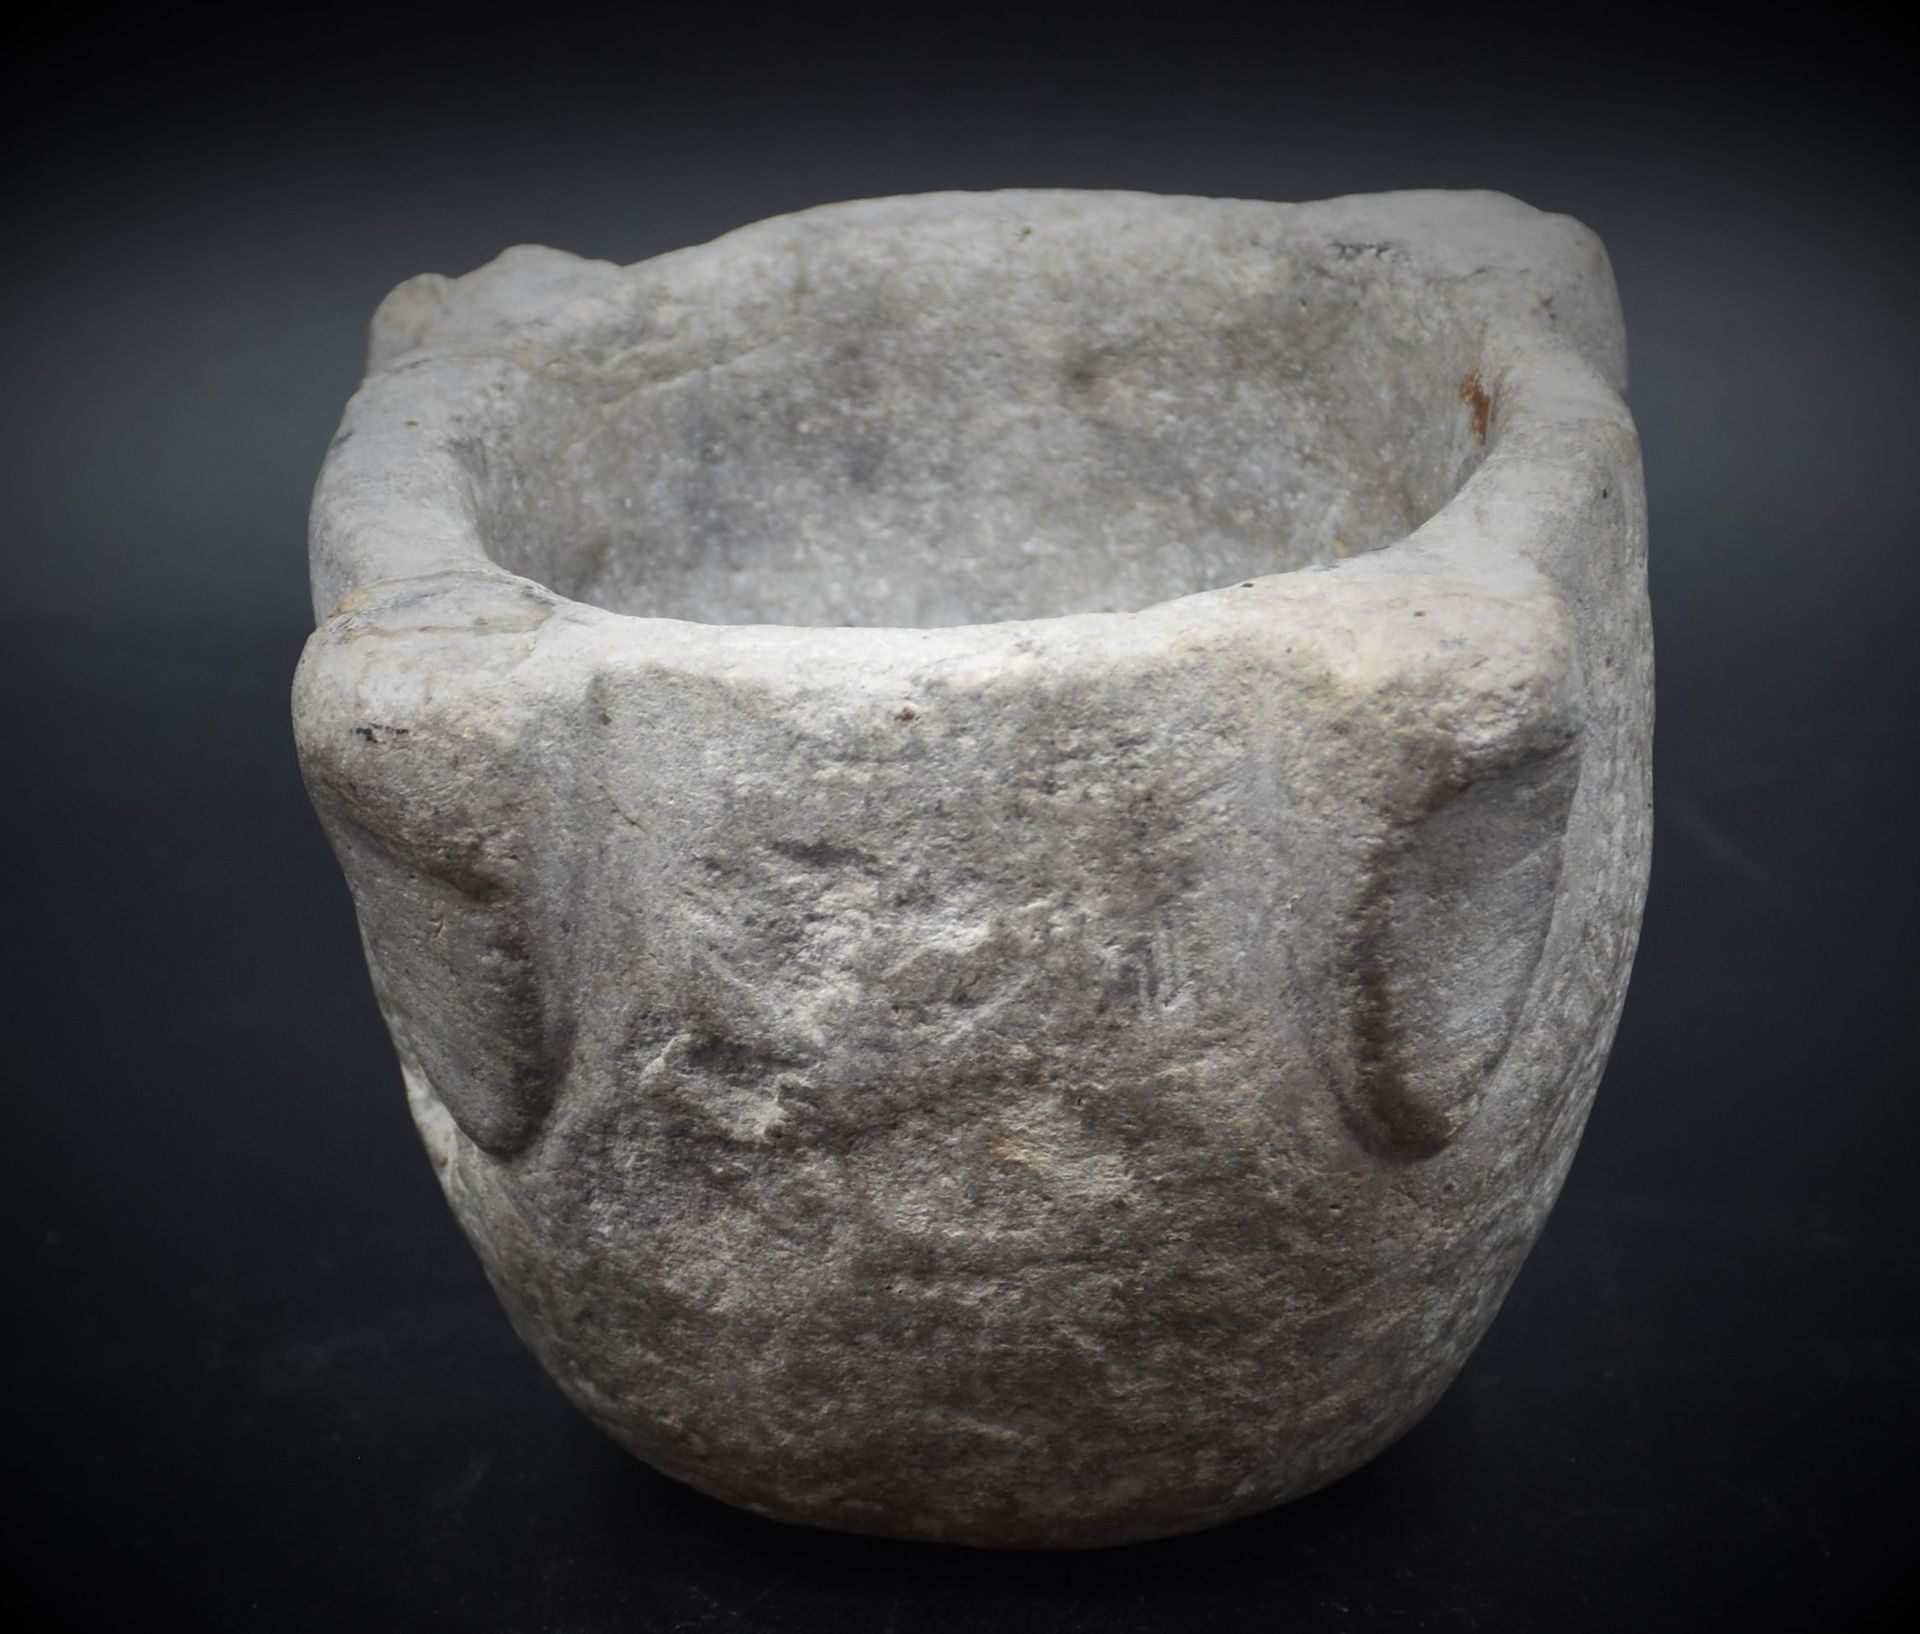 Null Malta medievale in pietra scolpita. Altezza: 10,5 cm. Larghezza: 12 cm.